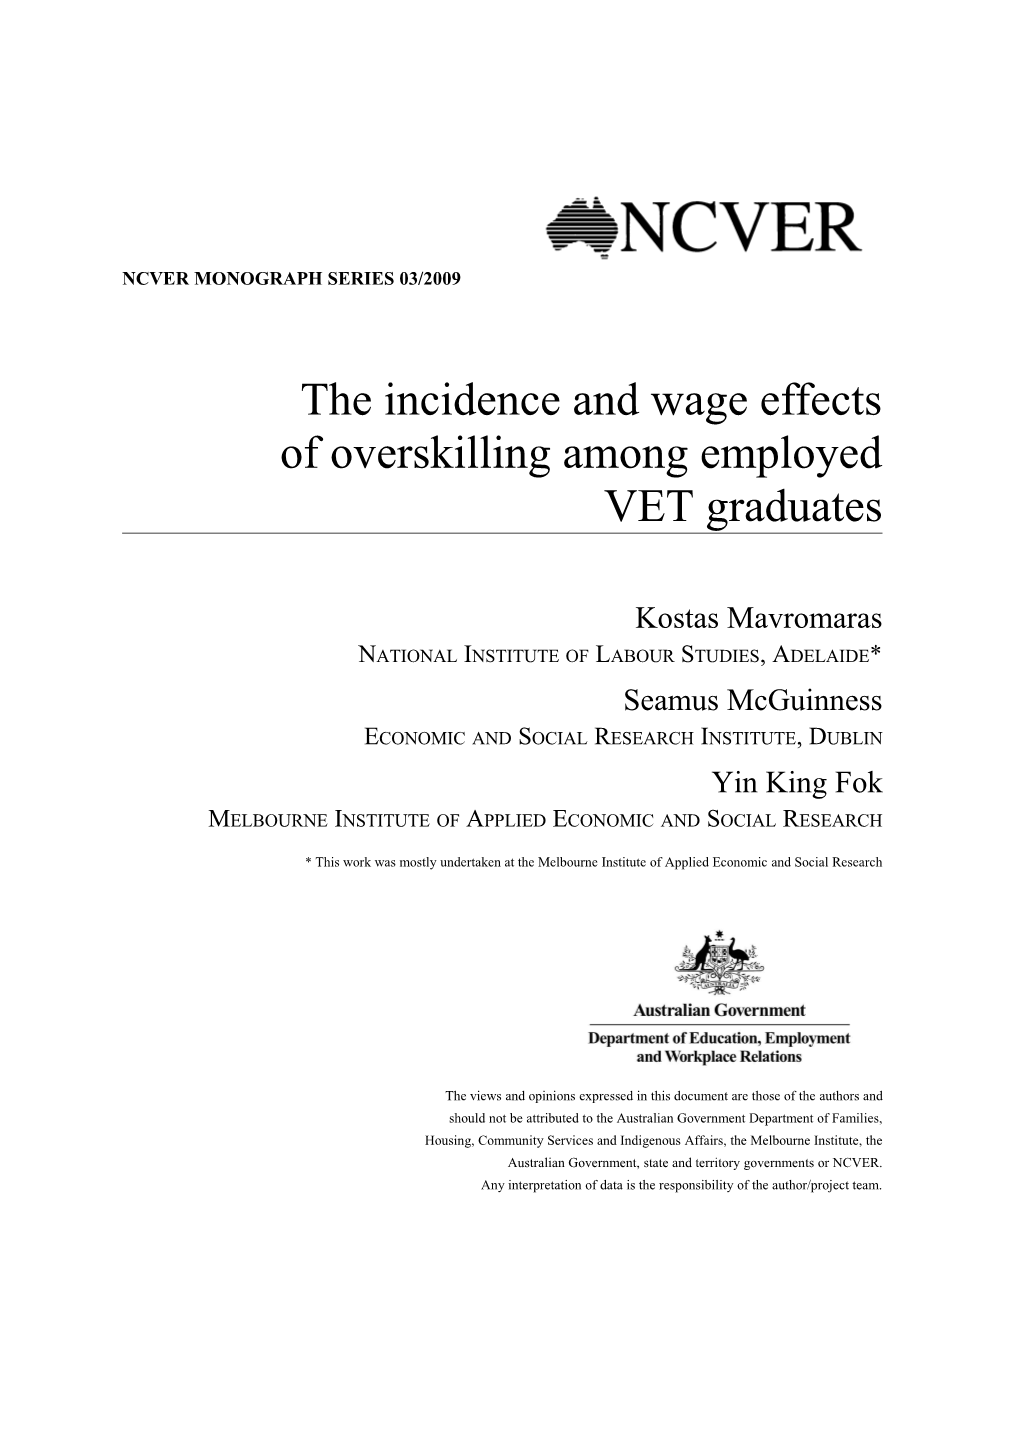 The Incidence and Wage Effects Ofoverskilling Among Employed Vetgraduates